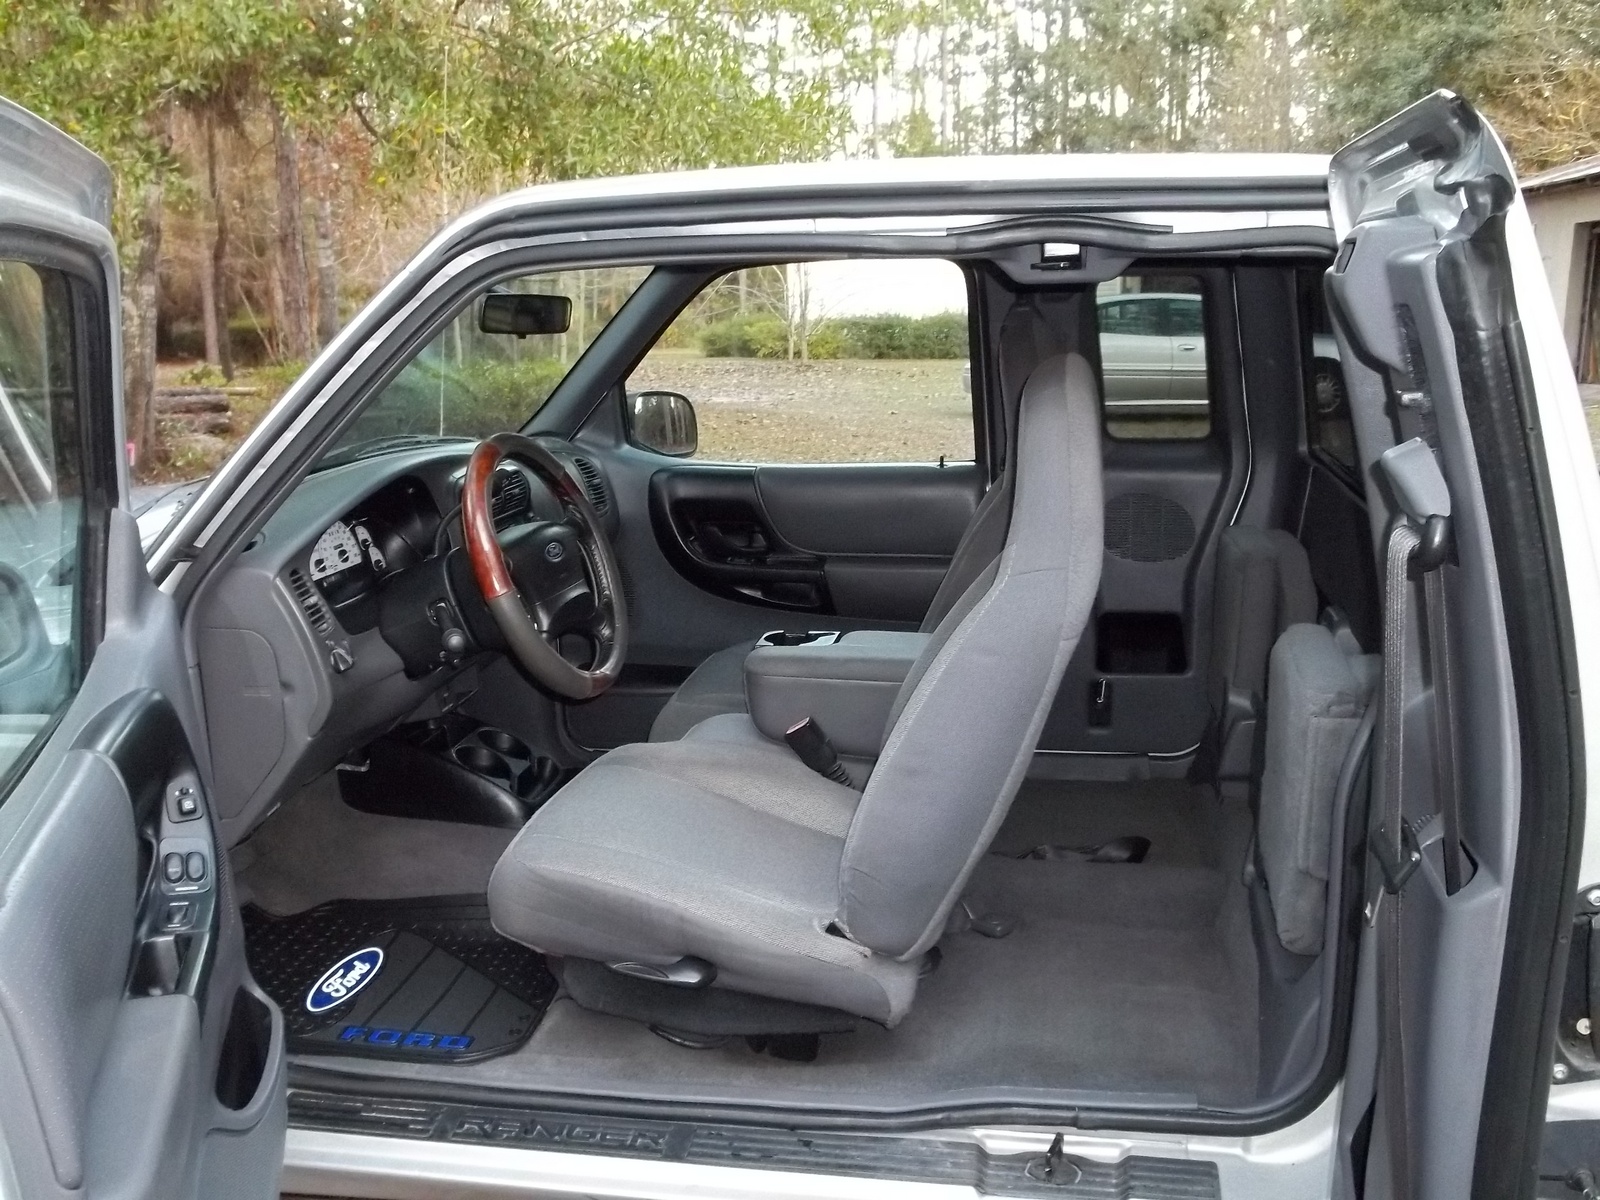 2001 Ford ranger xlt interior #8